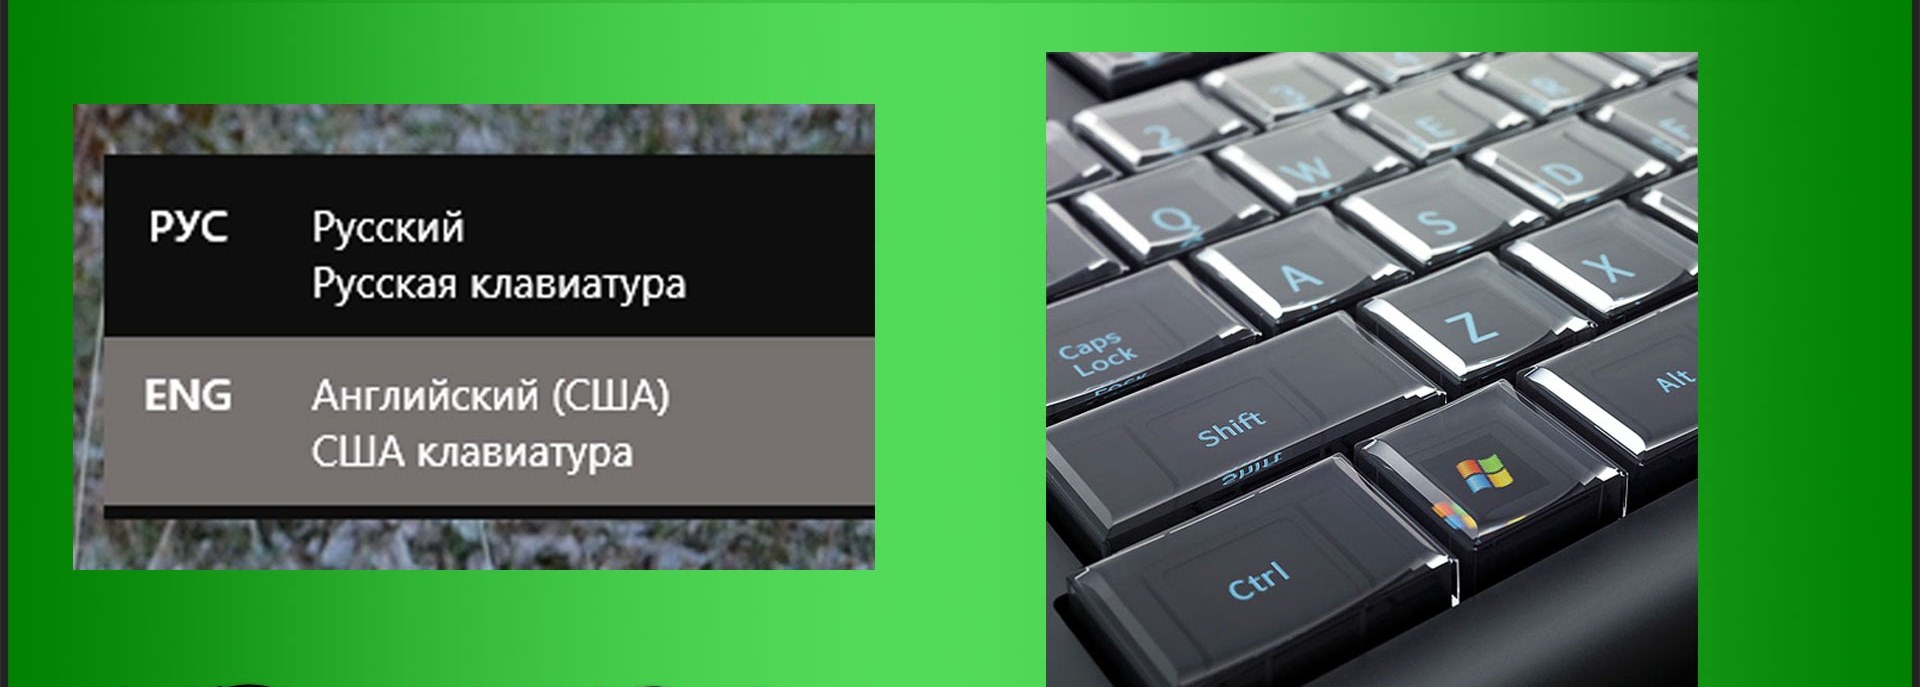 Переключение клавиатуры с русского на английский